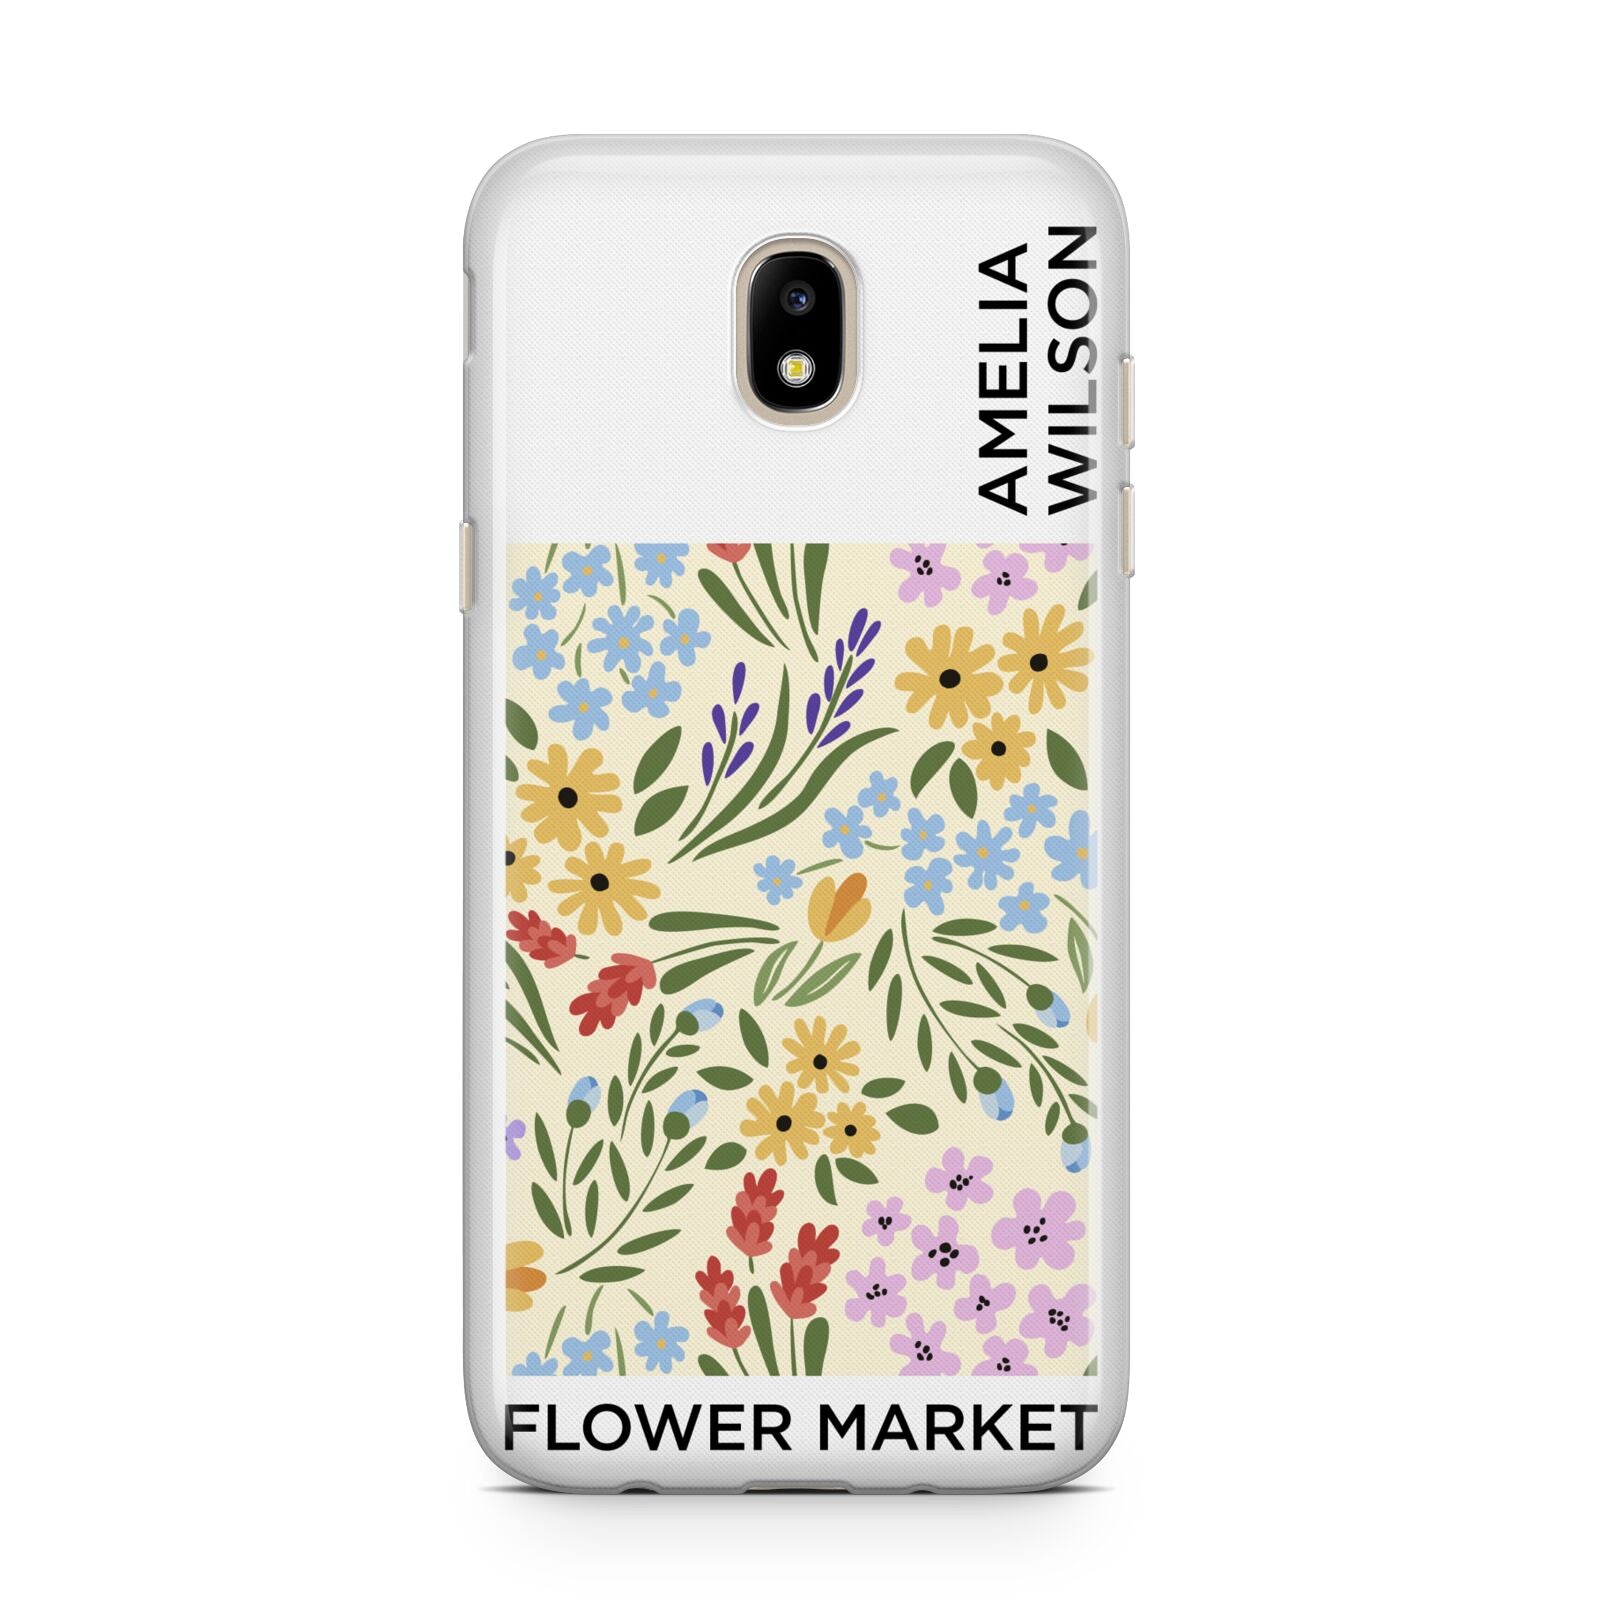 Paris Flower Market Samsung J5 2017 Case